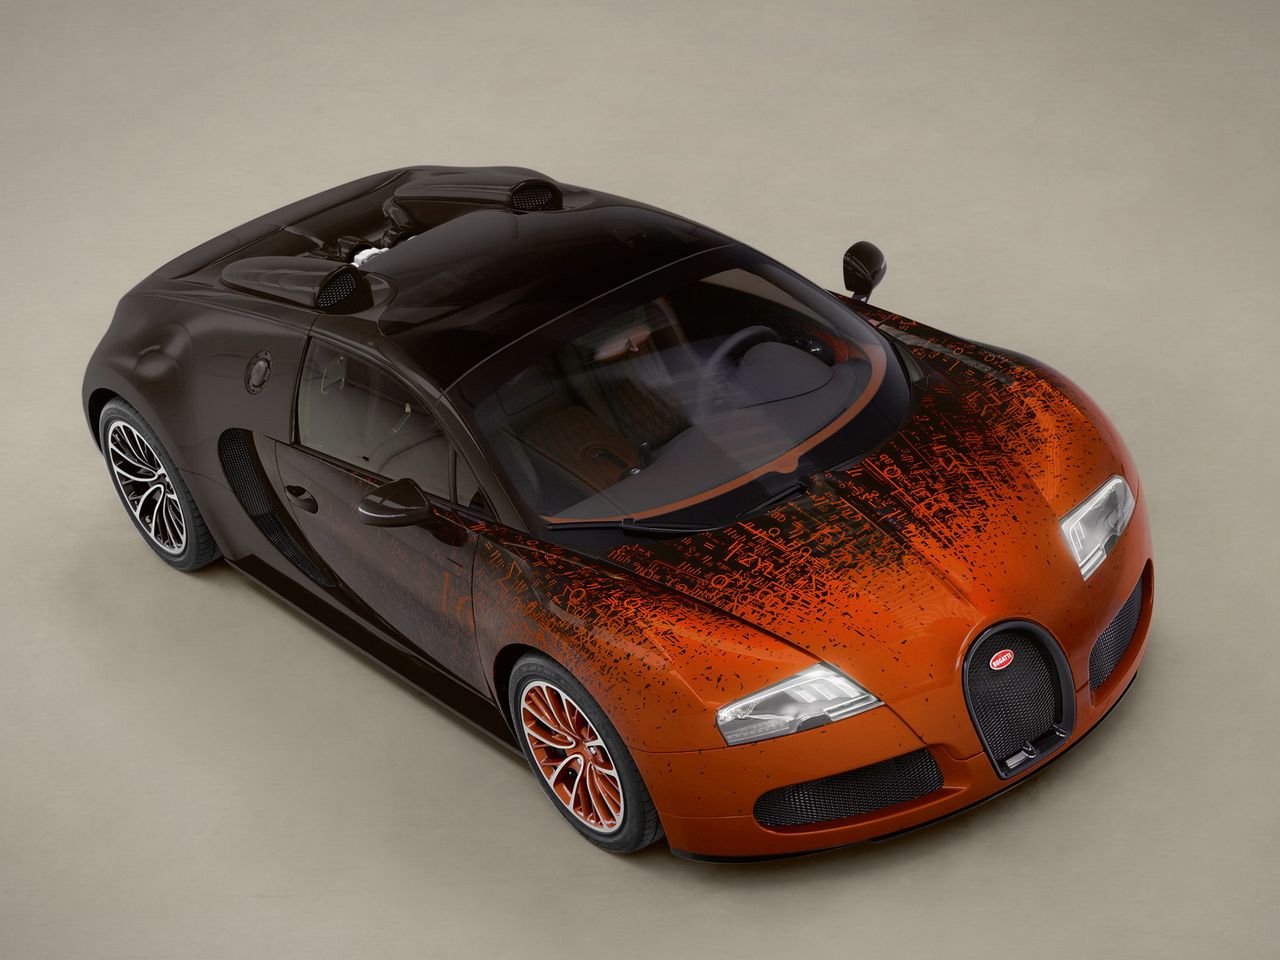 Bugatti Veyron Grand Sport Venet powstał w 2012 roku. Autorem malowania jego nadwozia jest francuski artysta Bernar Venet.